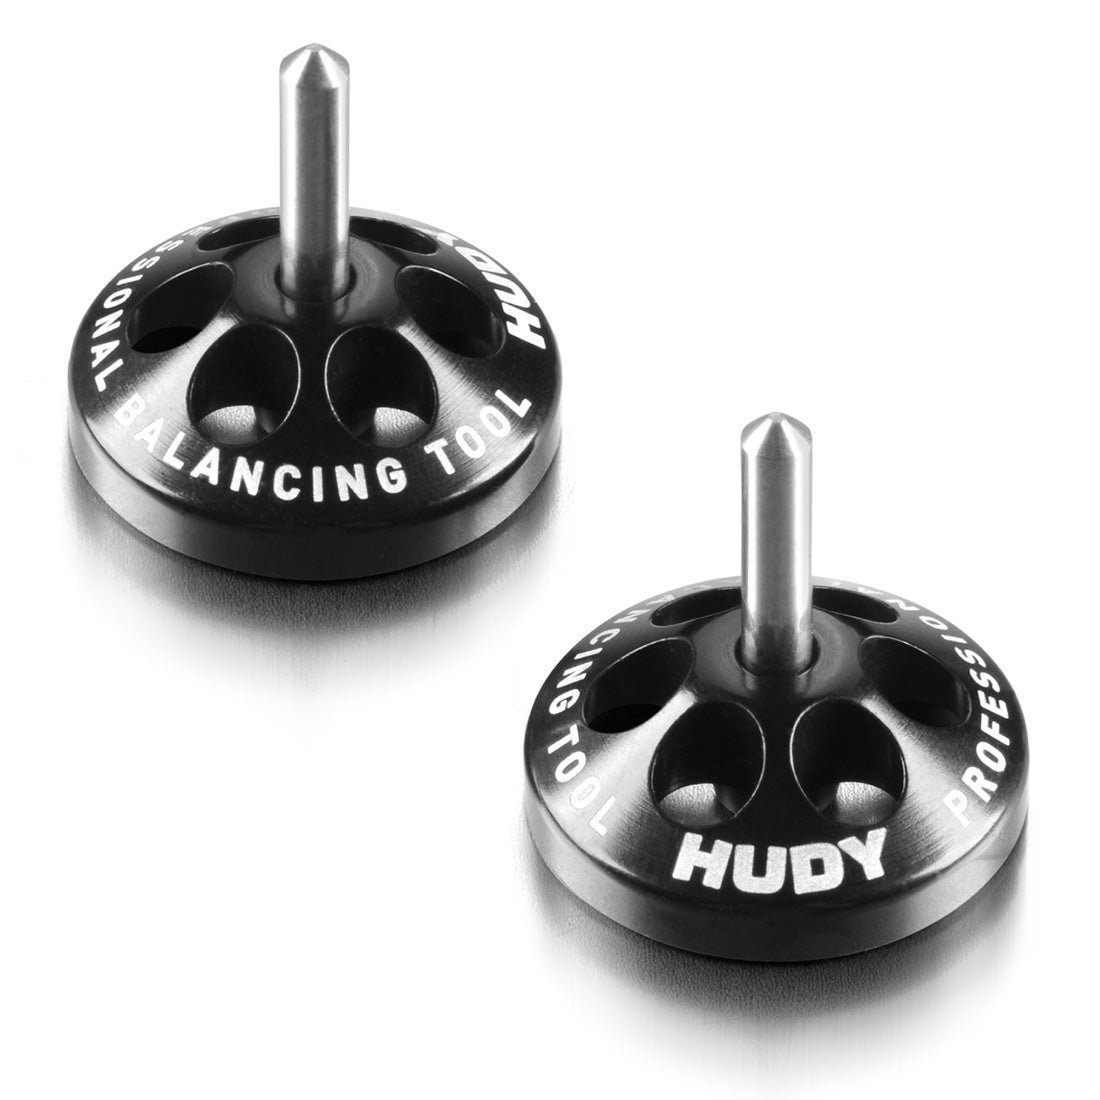 HUDY Chassis Balancing Tool v2 - 2pcs